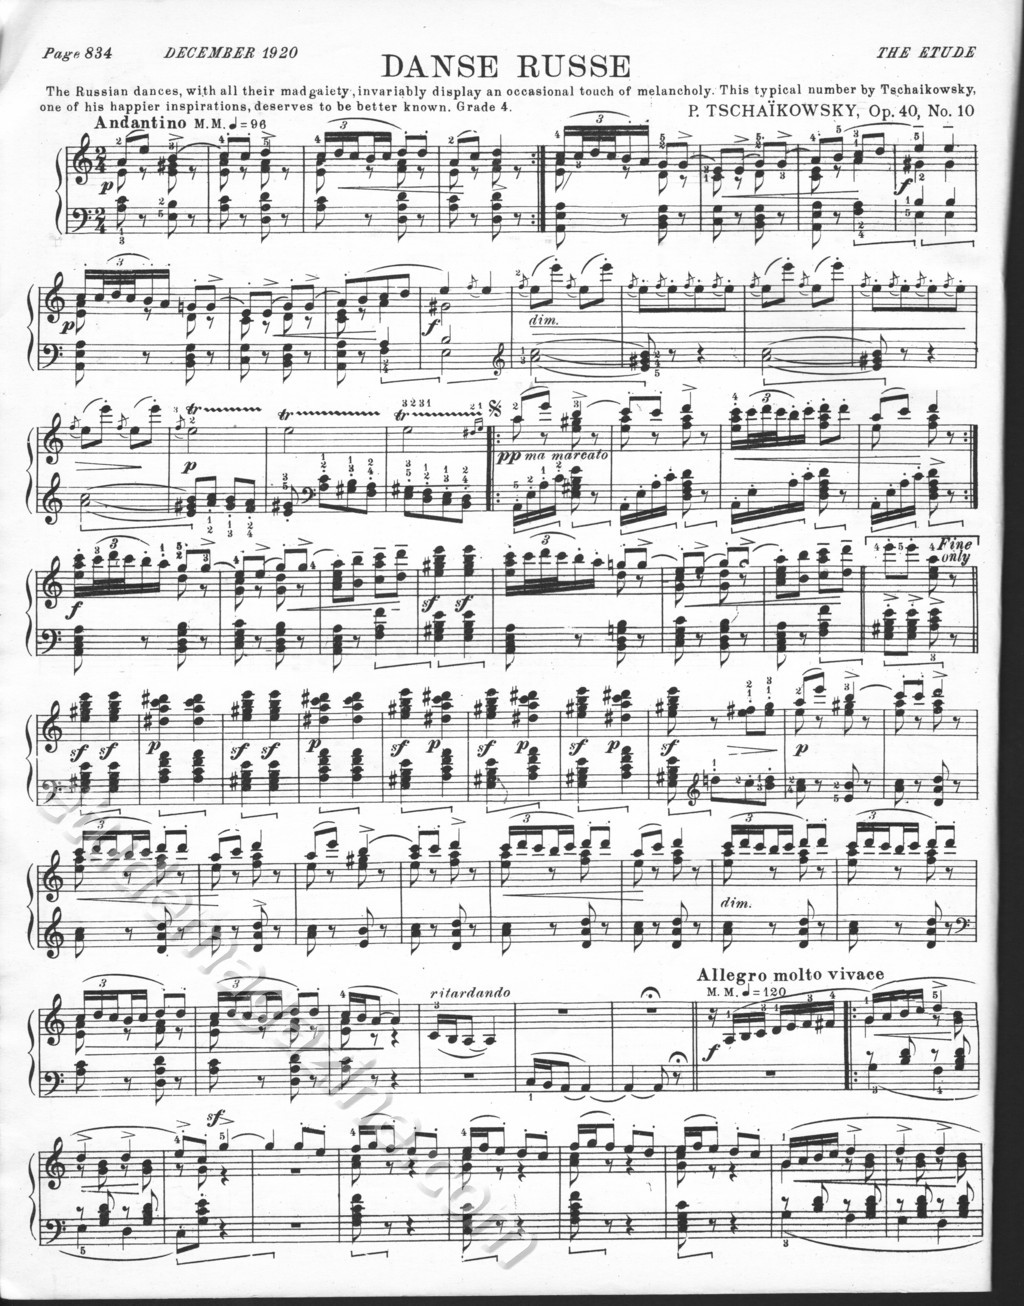 Danse Russe. P. Tschaïkowsky, Op. 40, No. 10